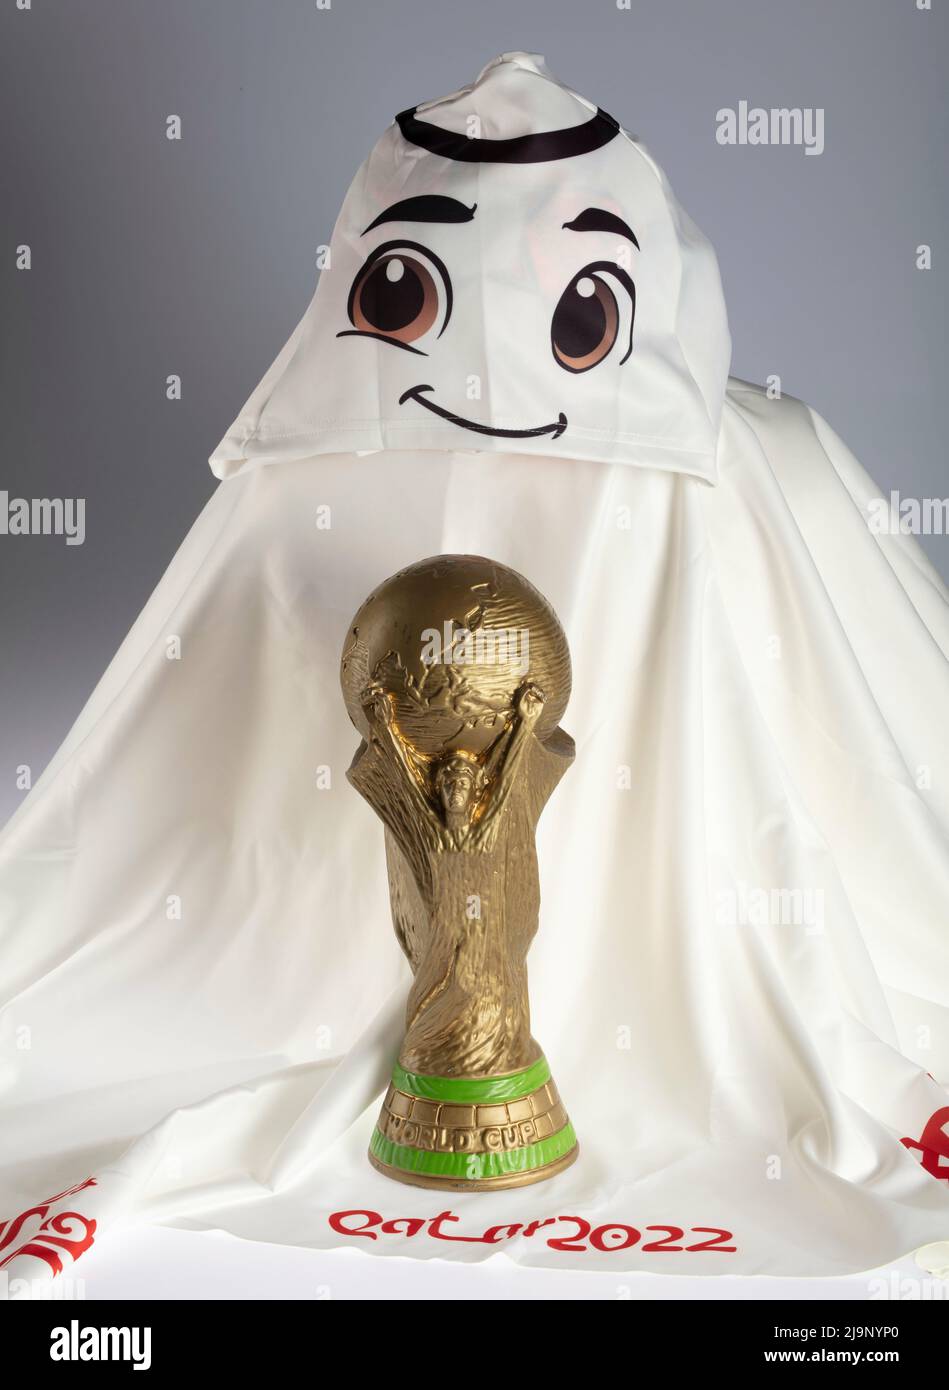 Laeeb - Qatar FIFA World Cup Mascot 3D model 3D model